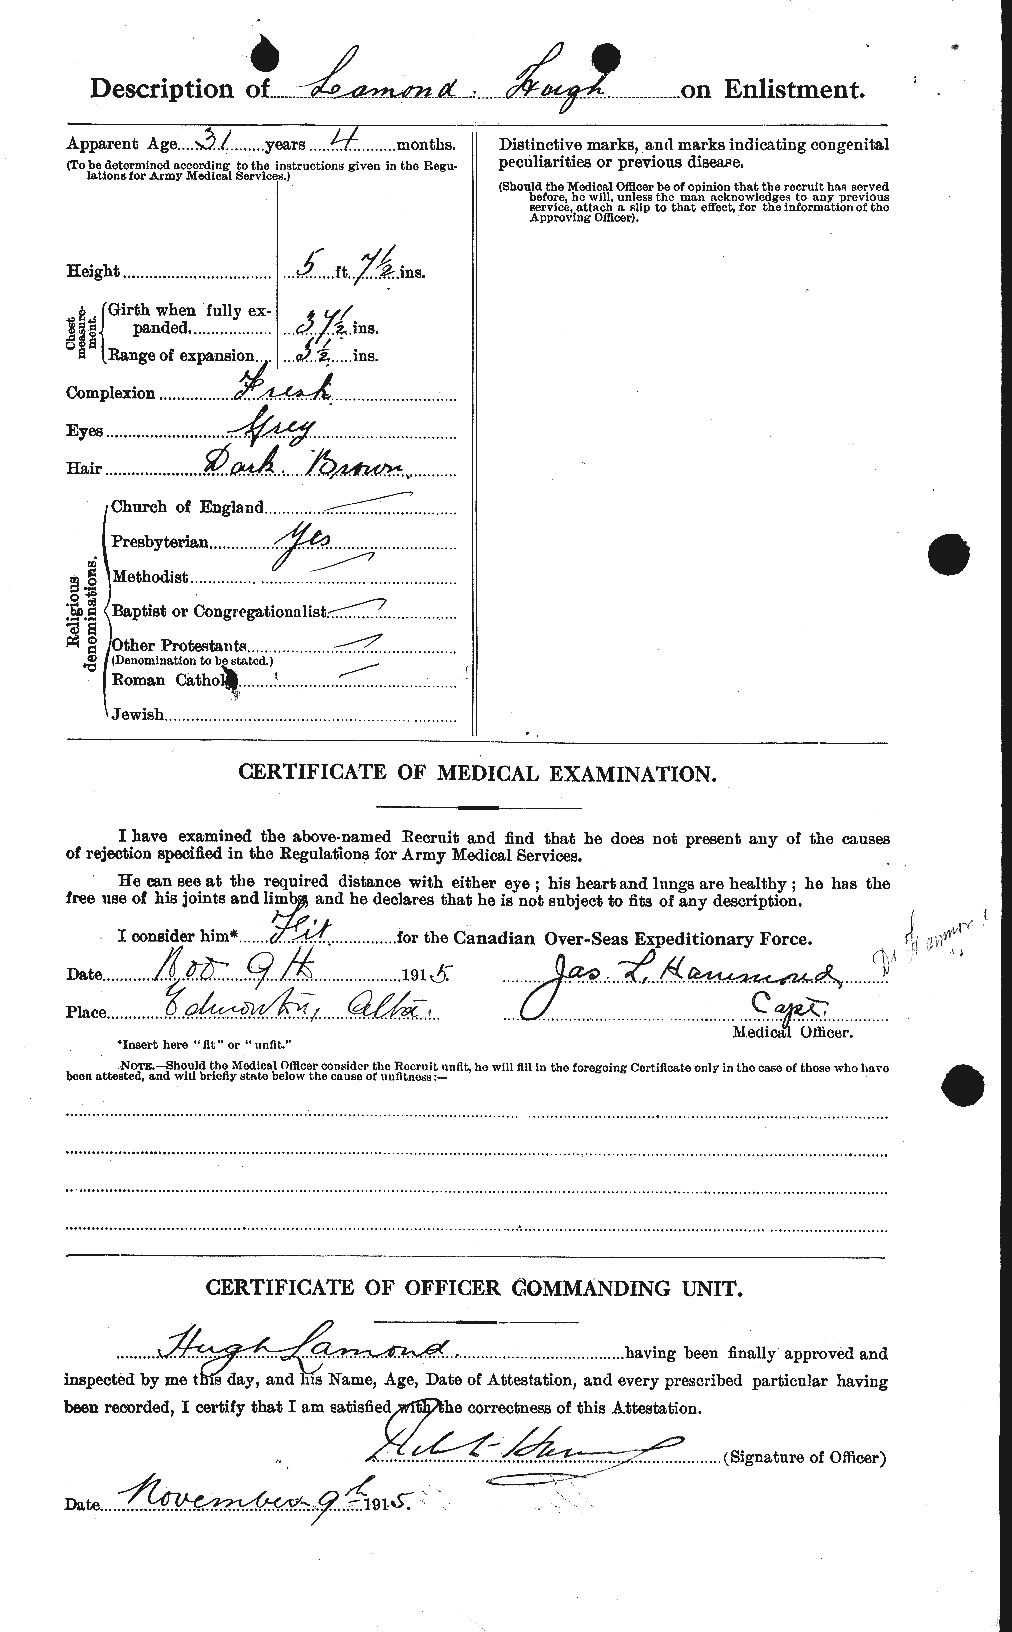 Dossiers du Personnel de la Première Guerre mondiale - CEC 446079b